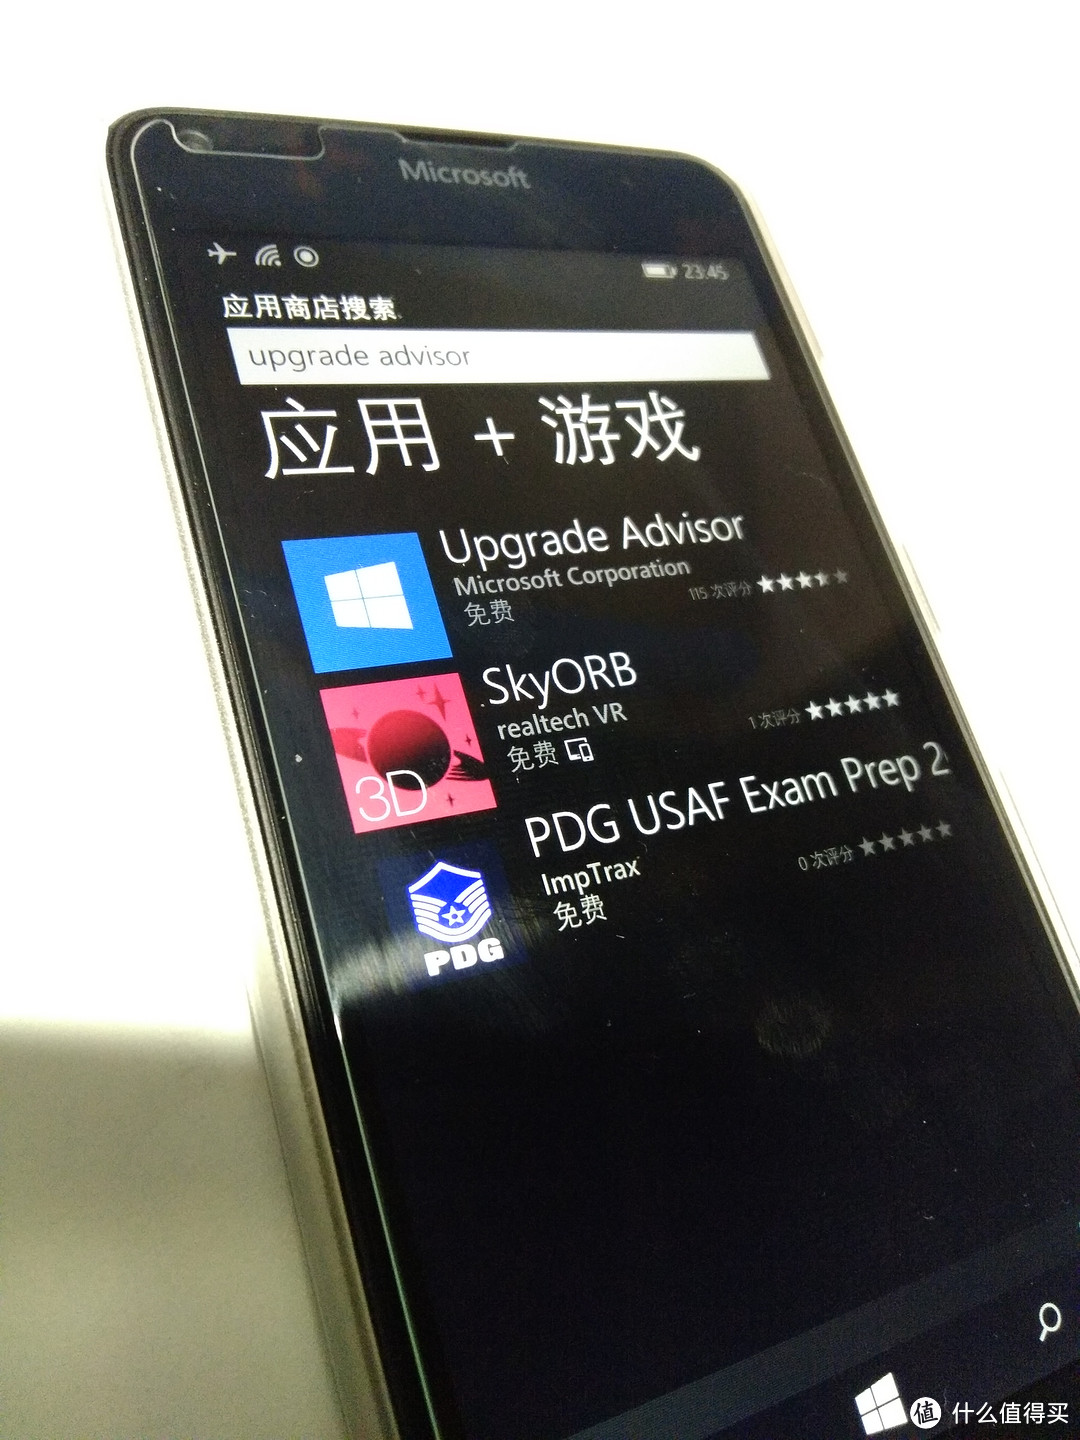 1%的信仰：Nokia 诺基亚 Lumia 640 终到手 附eBay海淘节活动介绍